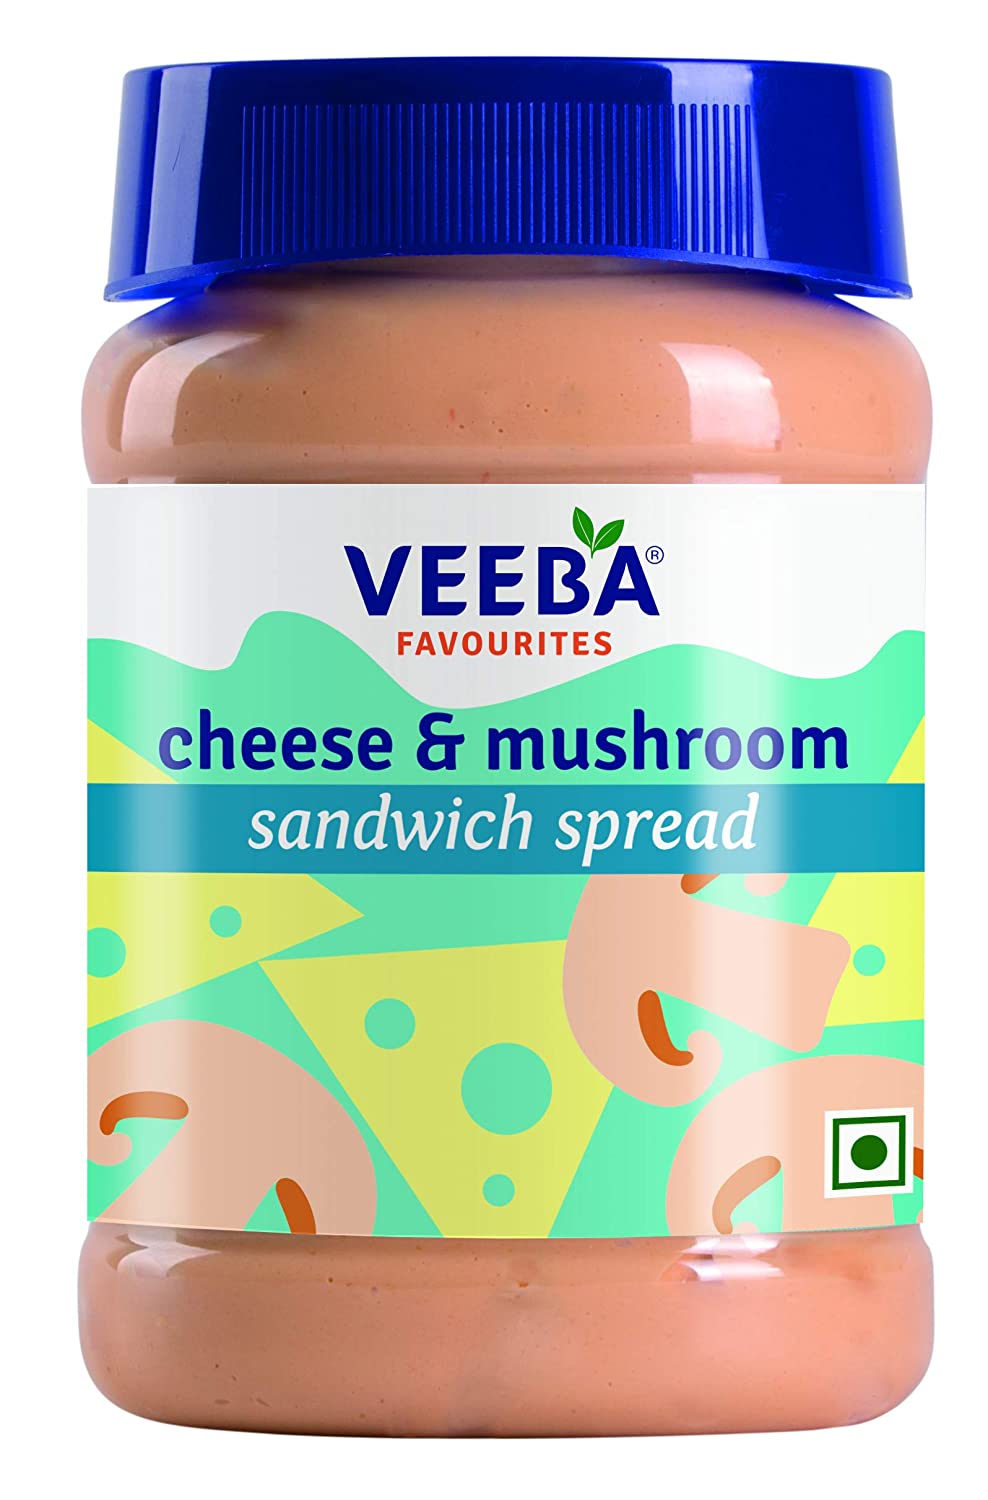 Veeba Cheese and Mushroom Sandwich Spread Image